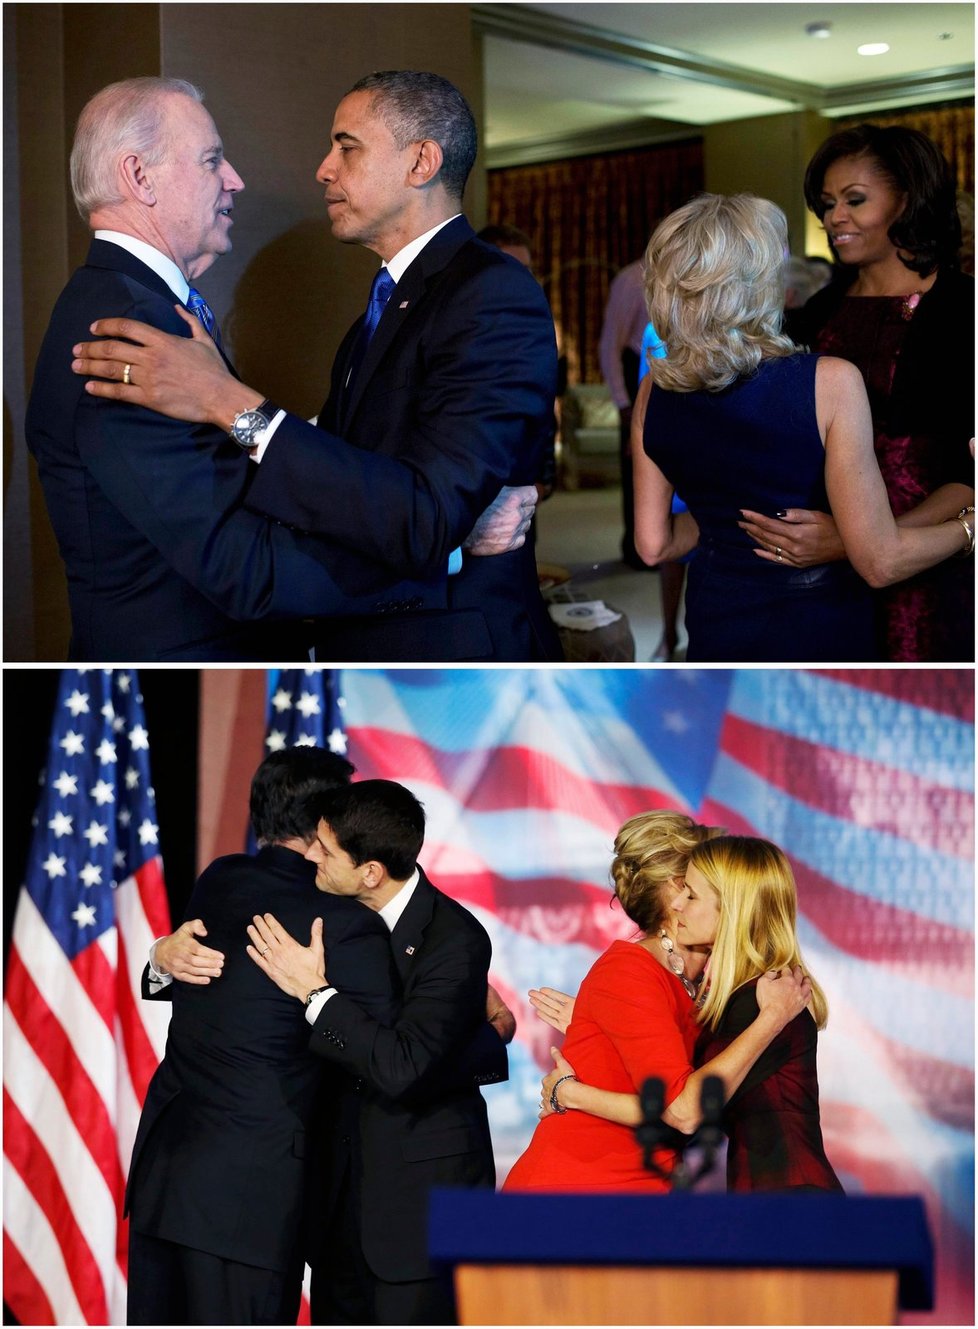 Srovnání ze štábu demokratů a republikánů: Nahoře Obama a viceprezident Joe Biden s manželkami, dole Mitt Romney a Paul Ryan.